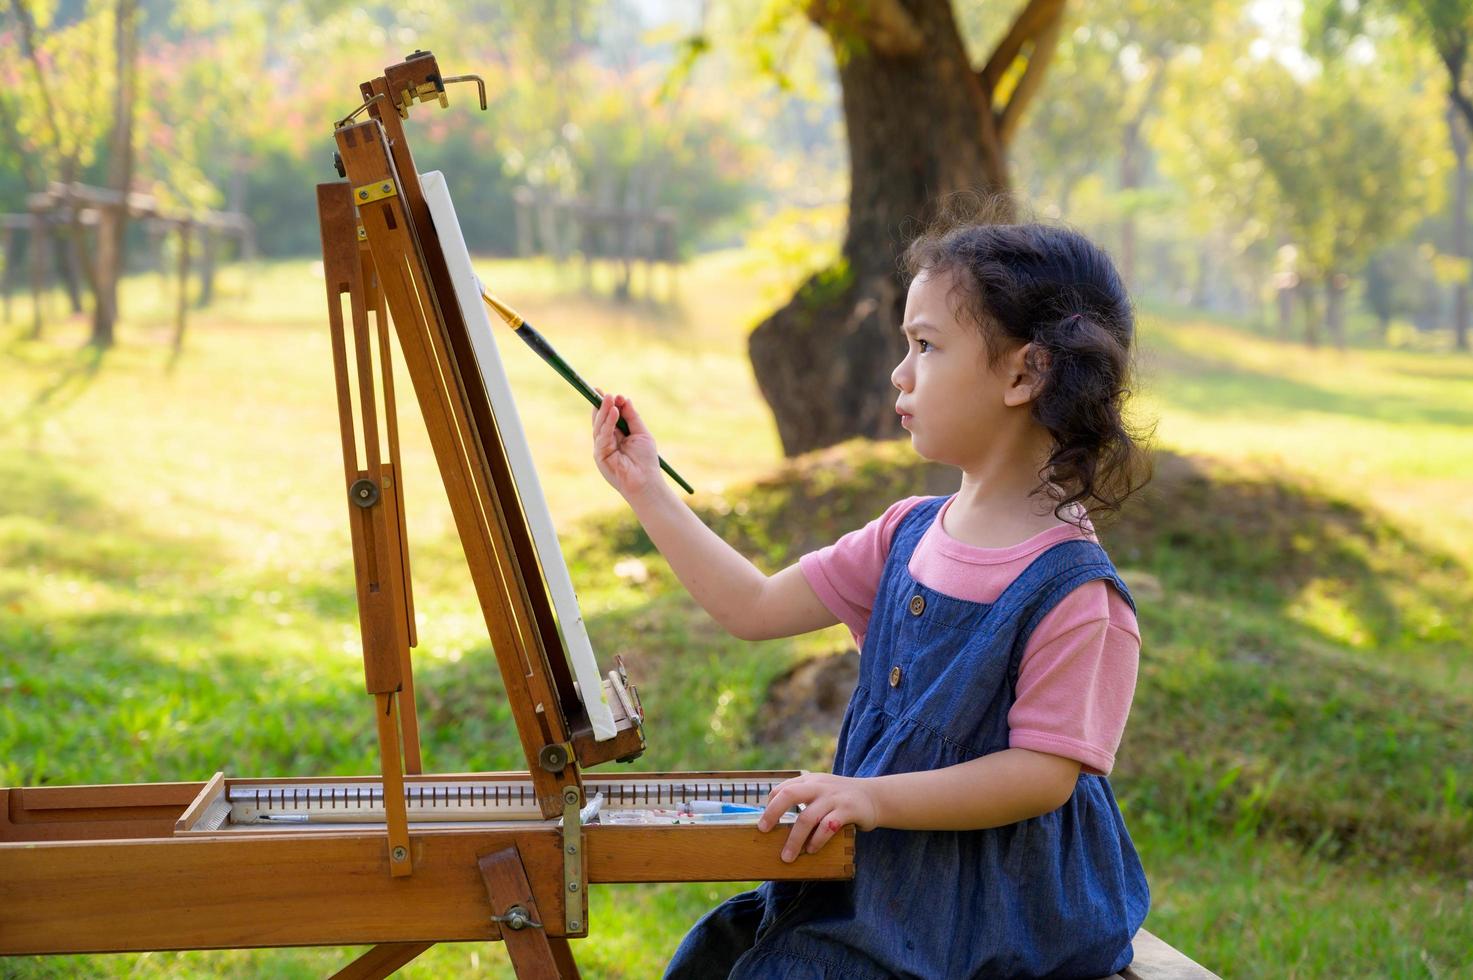 una niña pequeña está sentada en el banco de madera y pintada en el lienzo colocado en un puesto de dibujo foto